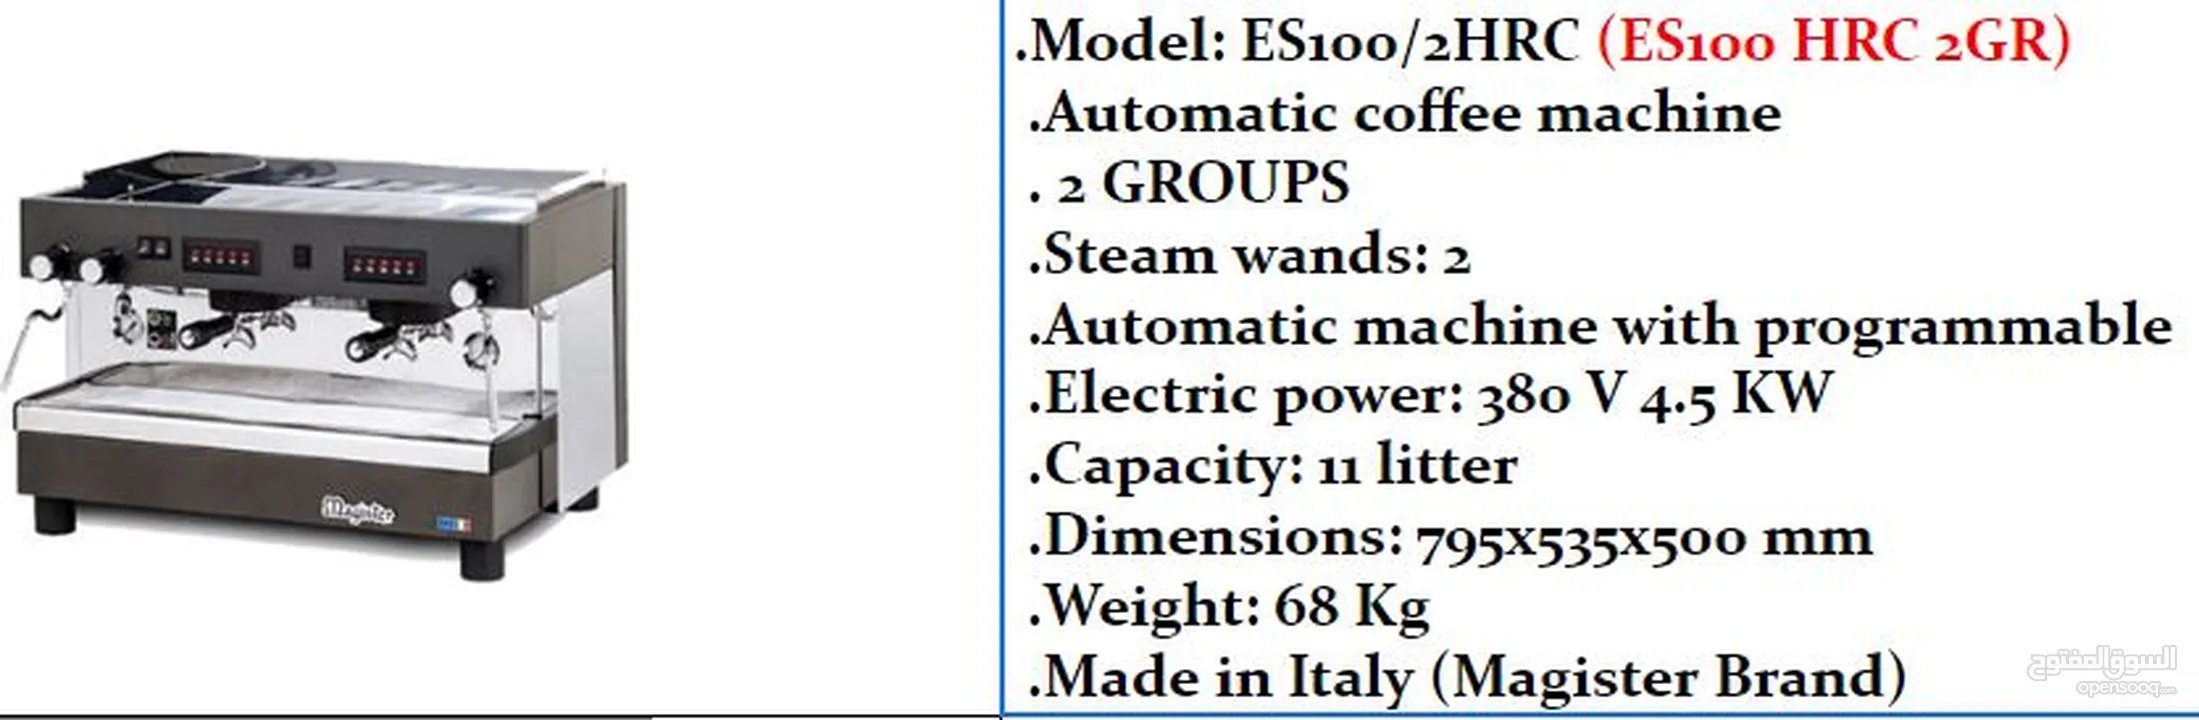 ماكينات قهوه  ماجيستر ايطالي 100%100 مقاسات مختلفه واشكال مختلفه